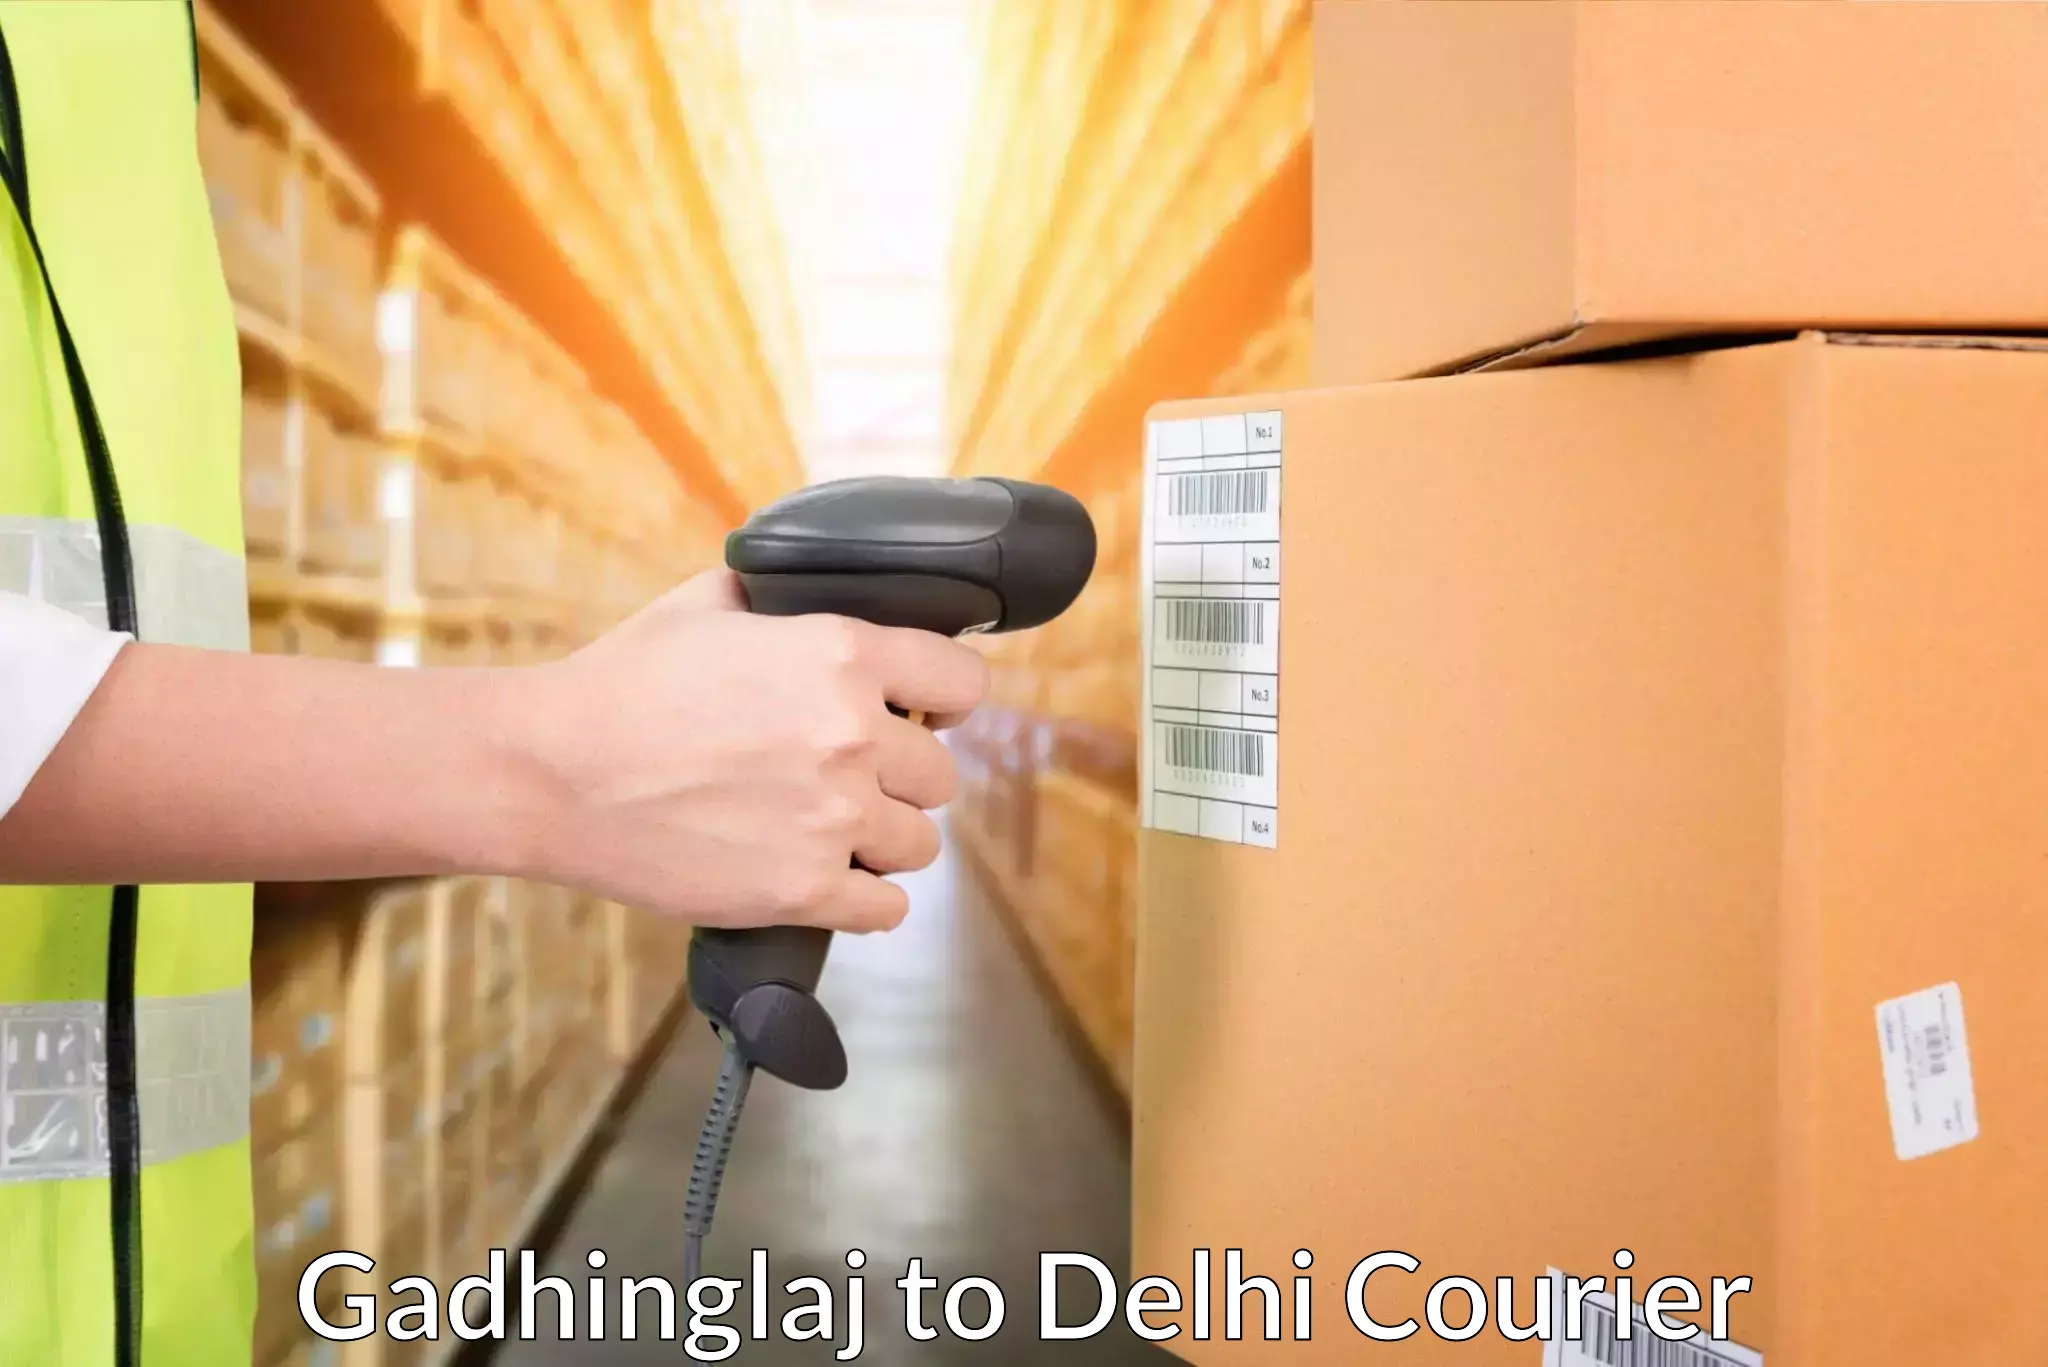 Courier service comparison Gadhinglaj to Delhi